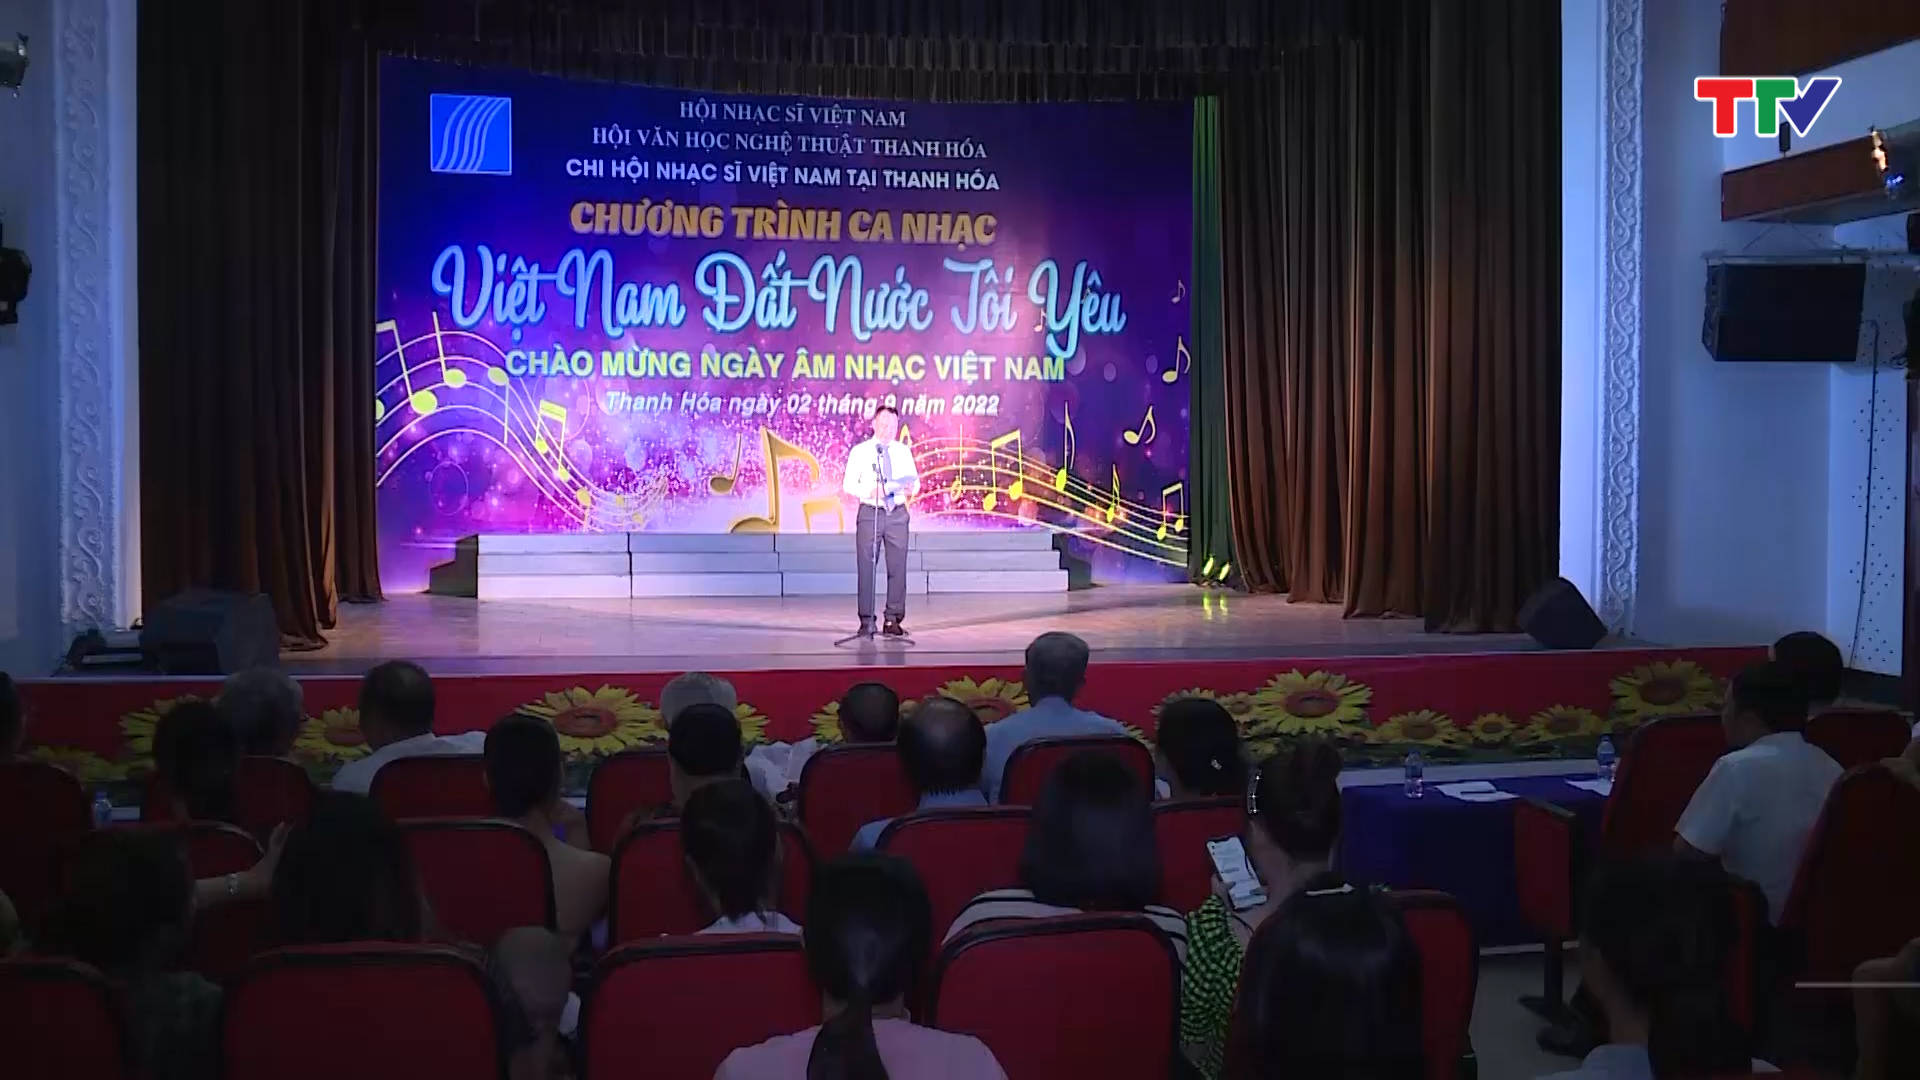 Chương trình ca nhạc chào mừng Ngày âm nhạc Việt Nam 3/9 - Ảnh 3.